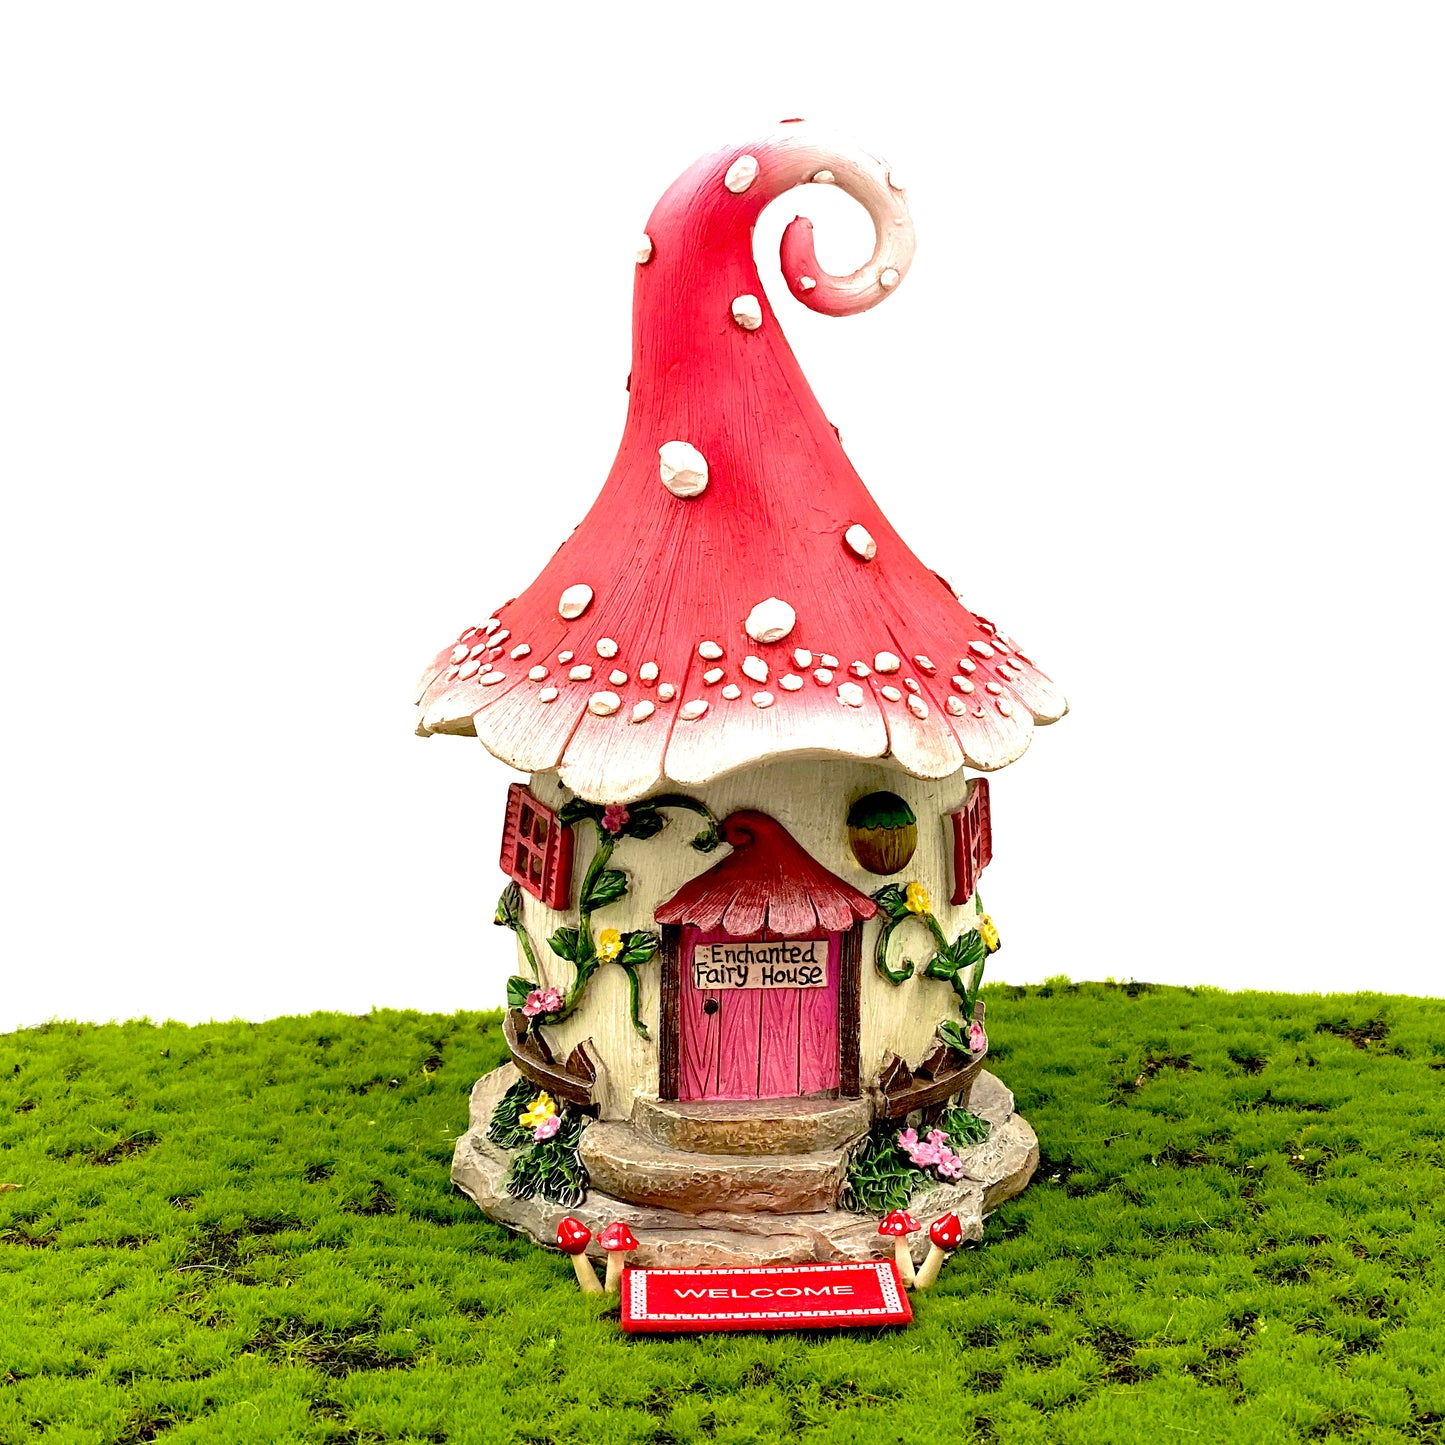 Enchanted Fairy House Set